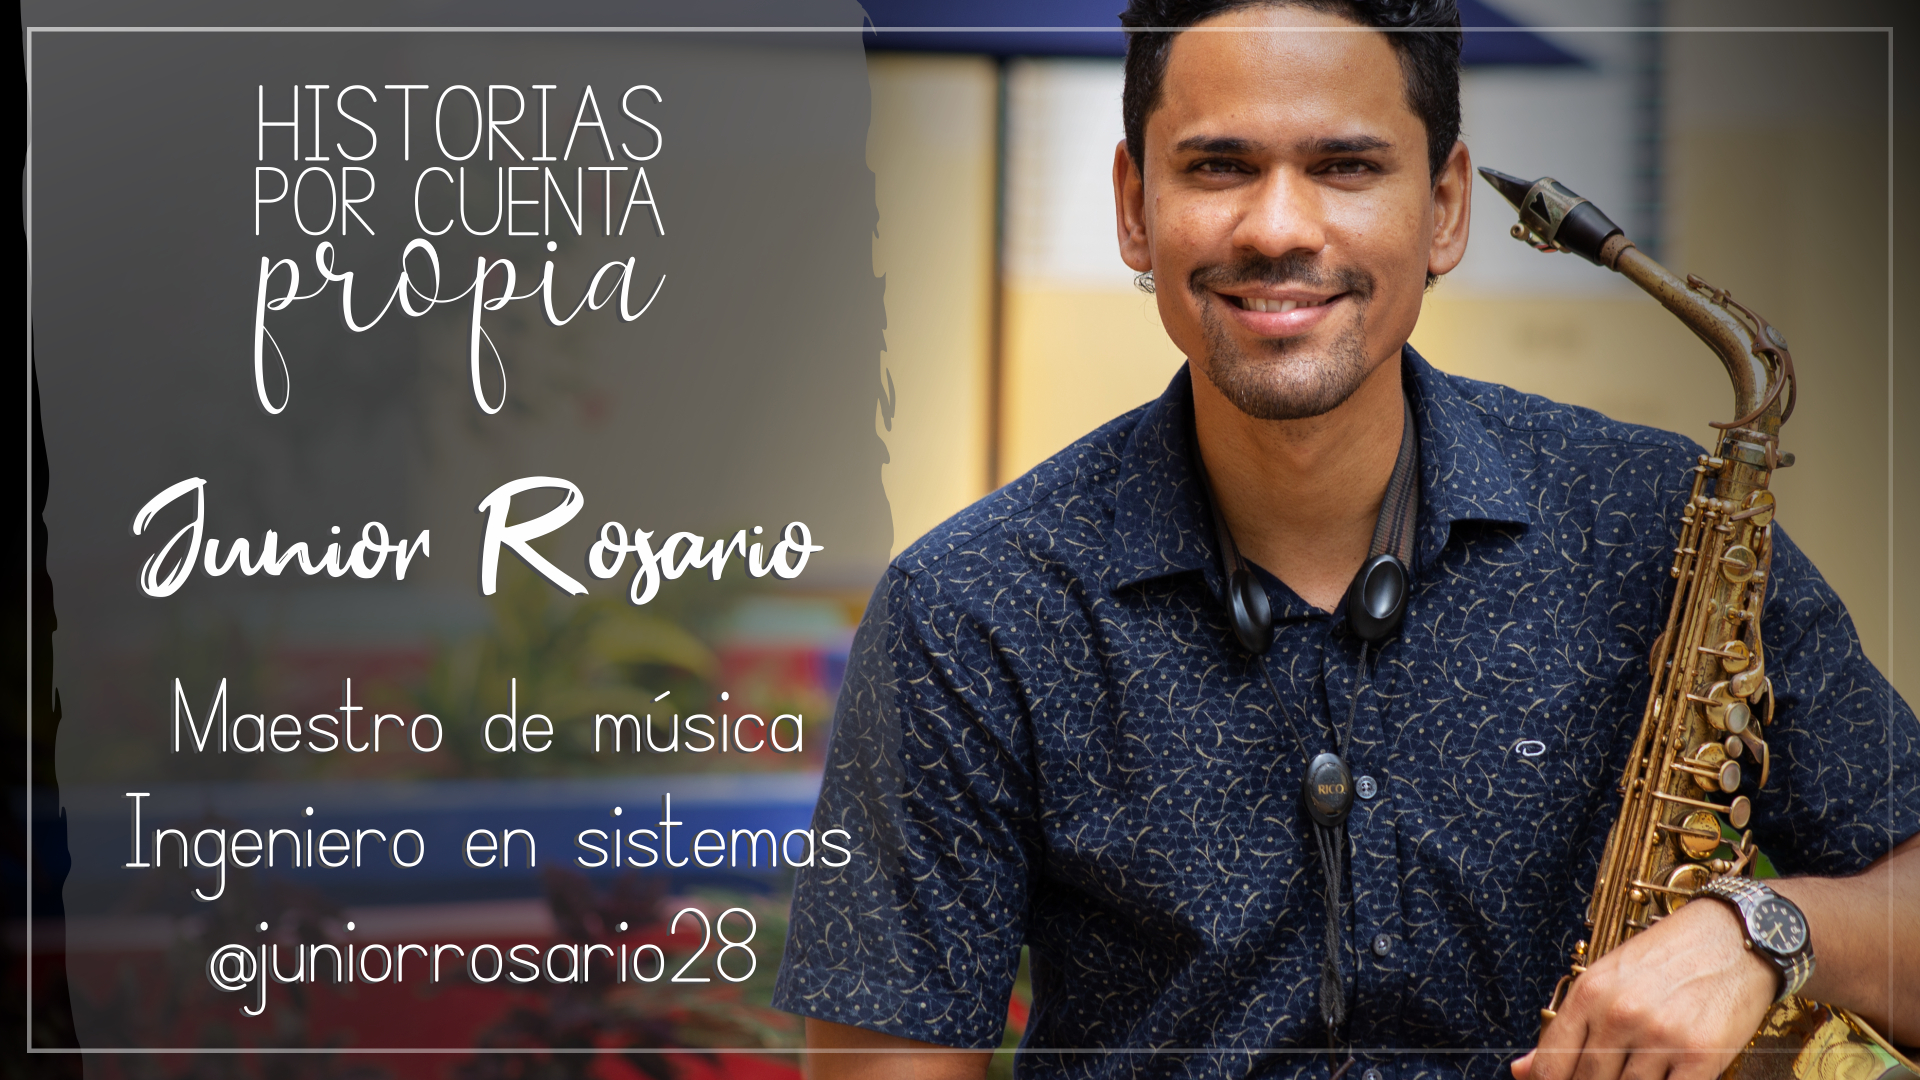 REPÚBLICA DOMINICANA: Junior es ingeniero y maestro de música. ?